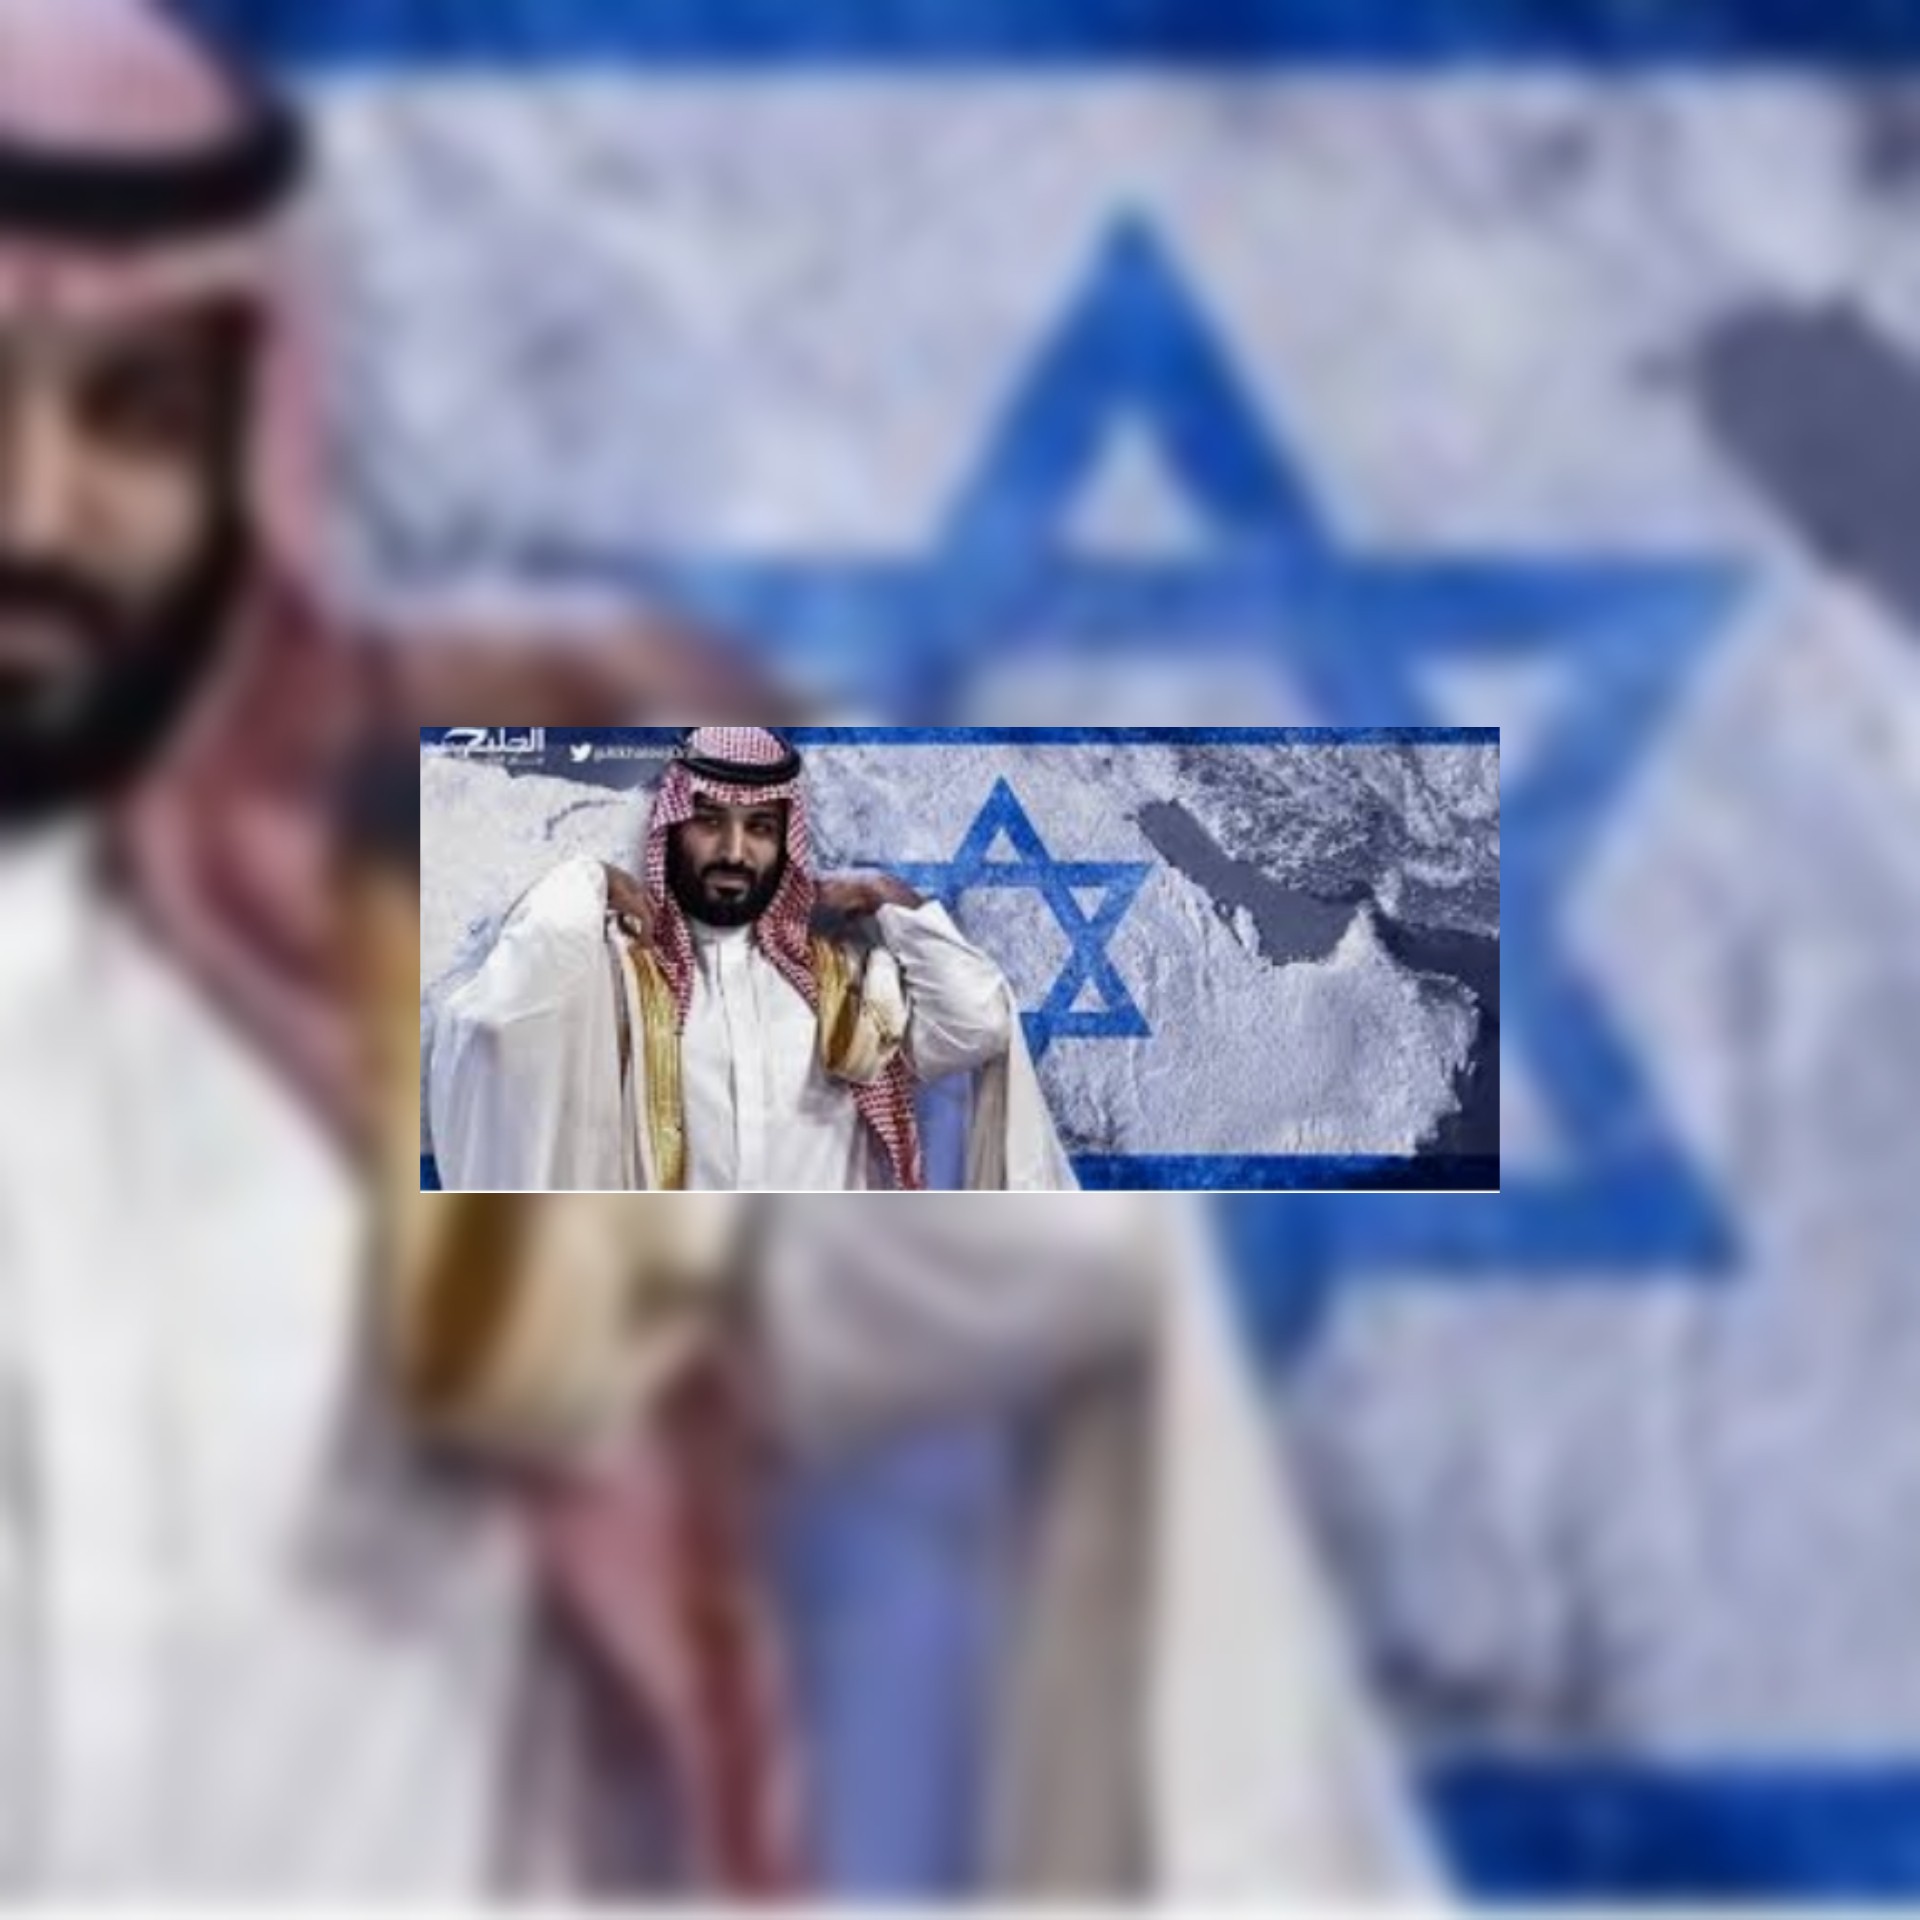 ترجمات/ معهد السياسية و الإستراتيجية الإسرائيلية:  حذرة ولكن مفتونة المملكة العربية السعودية لا تزال تزن العلاقات المحتملة مع 